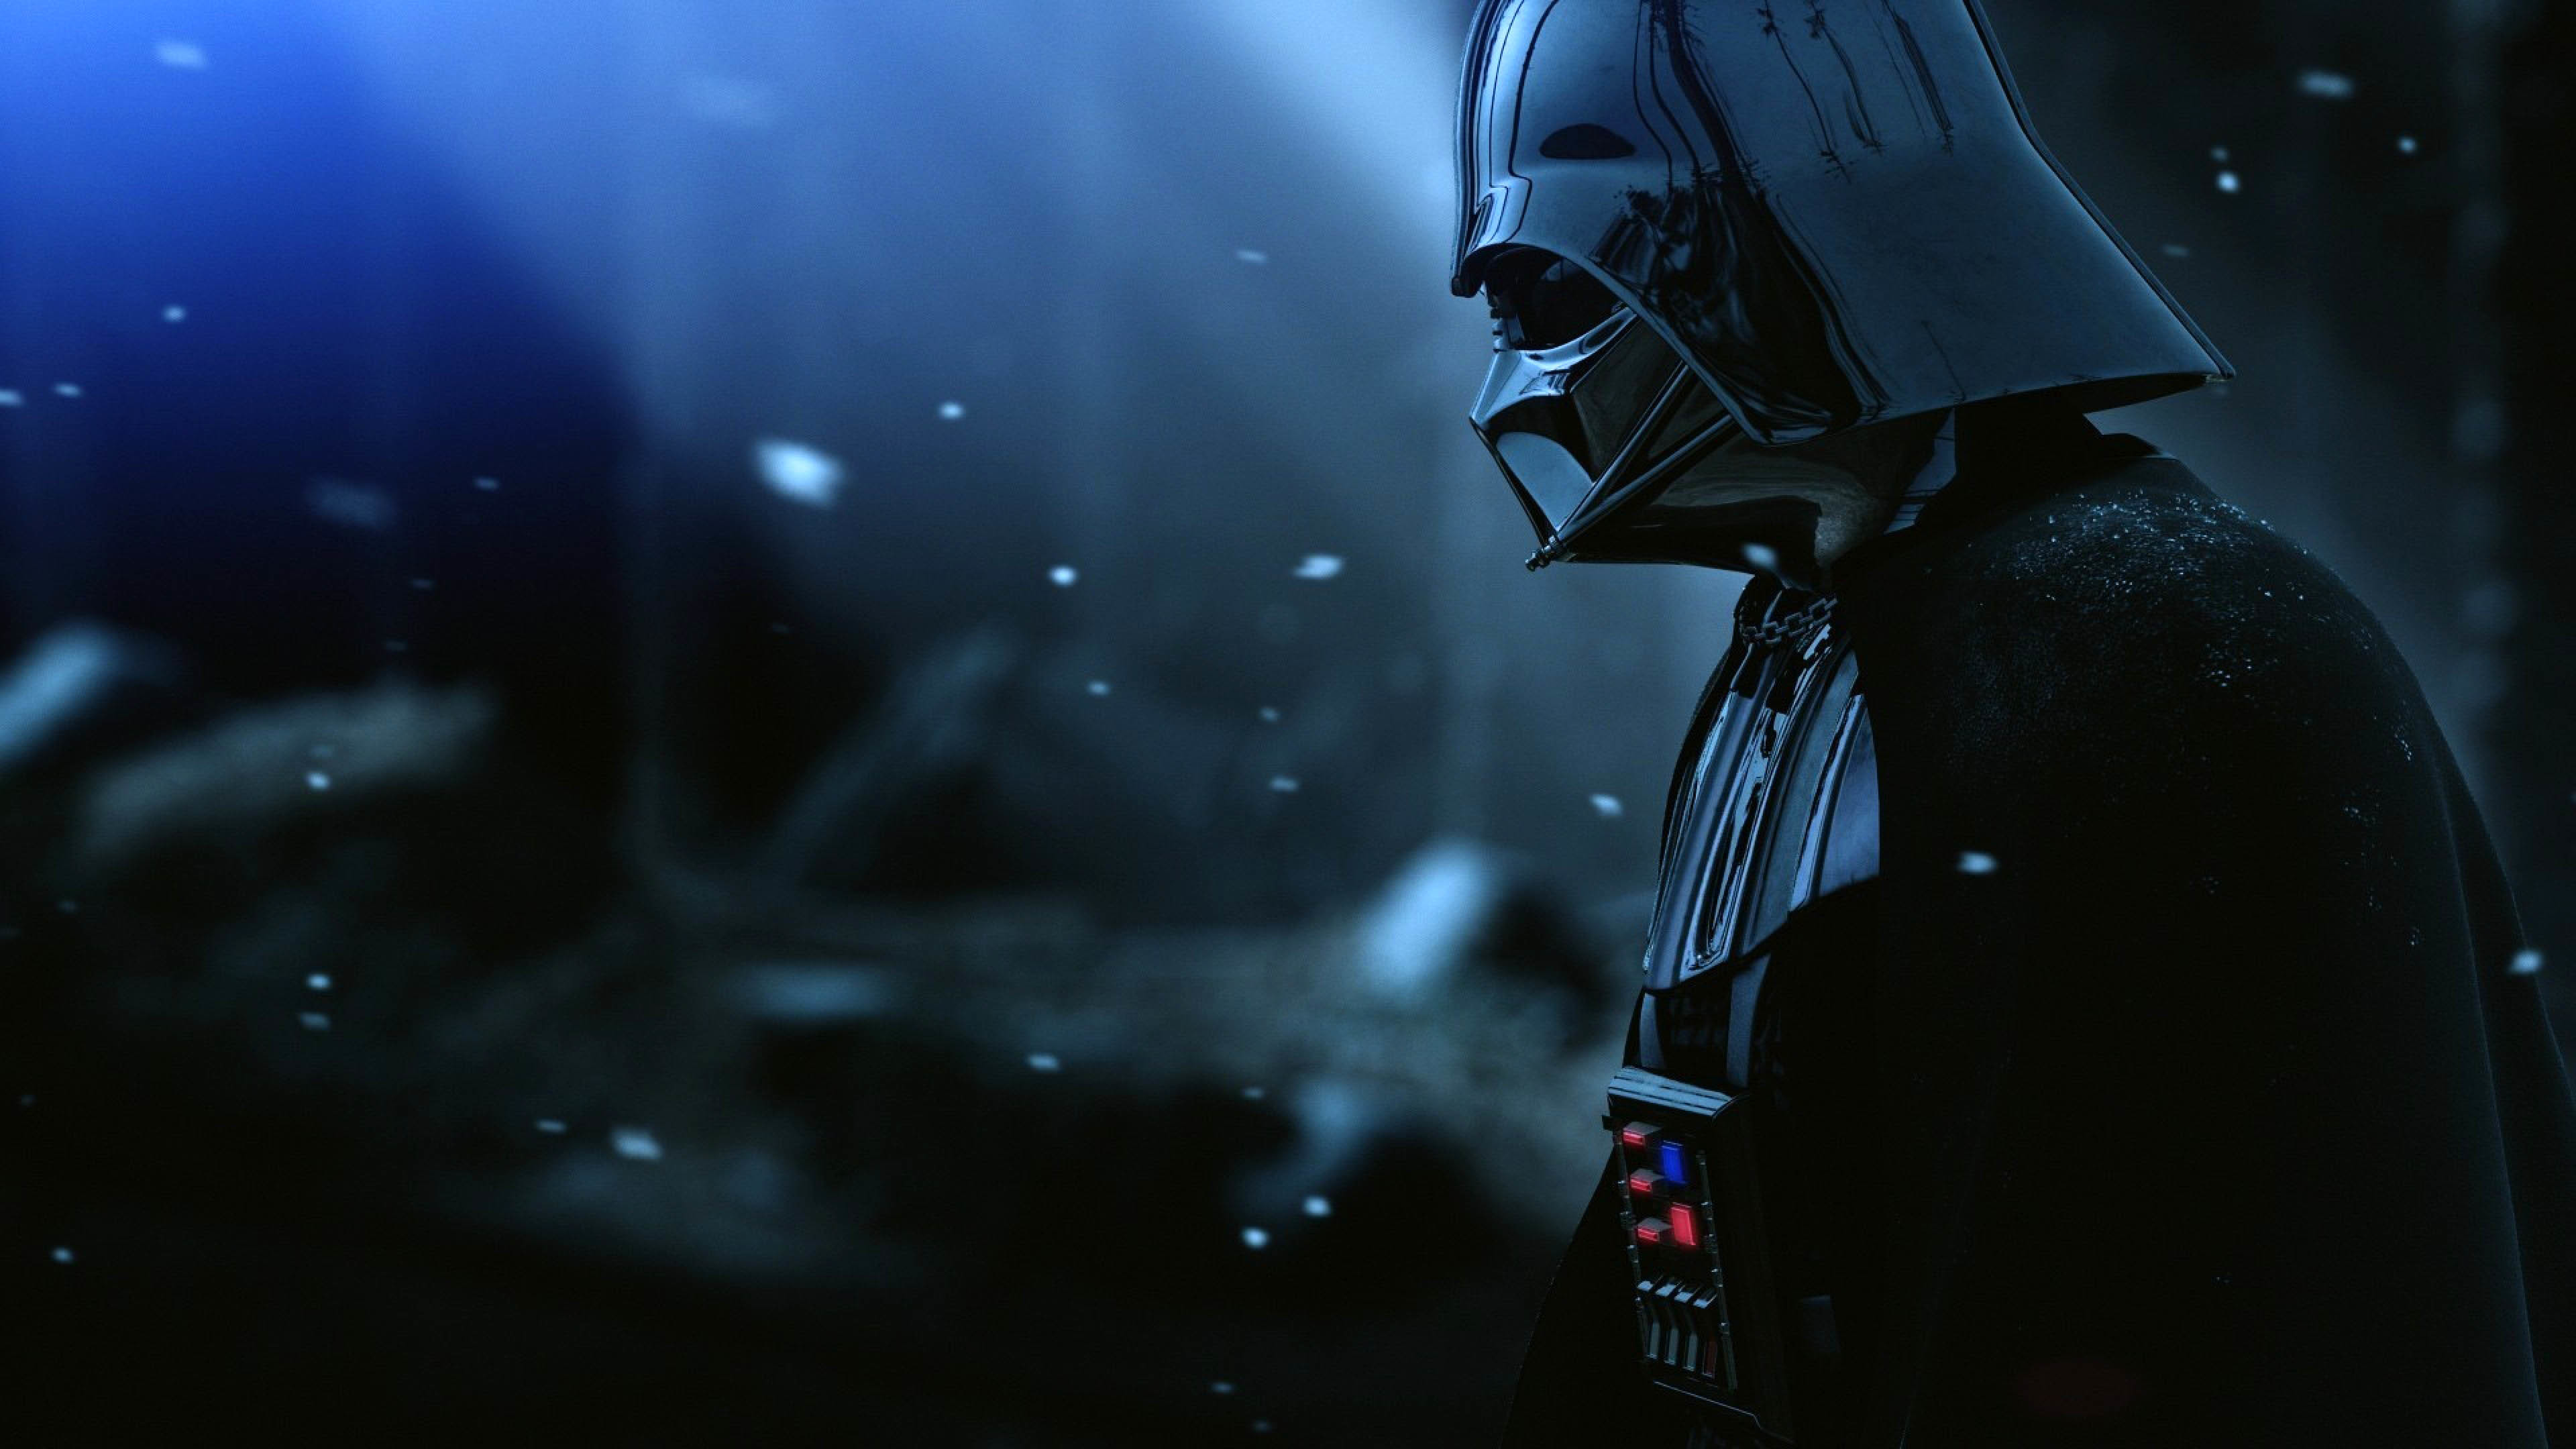 Darth Vader – Star Wars wallpaper